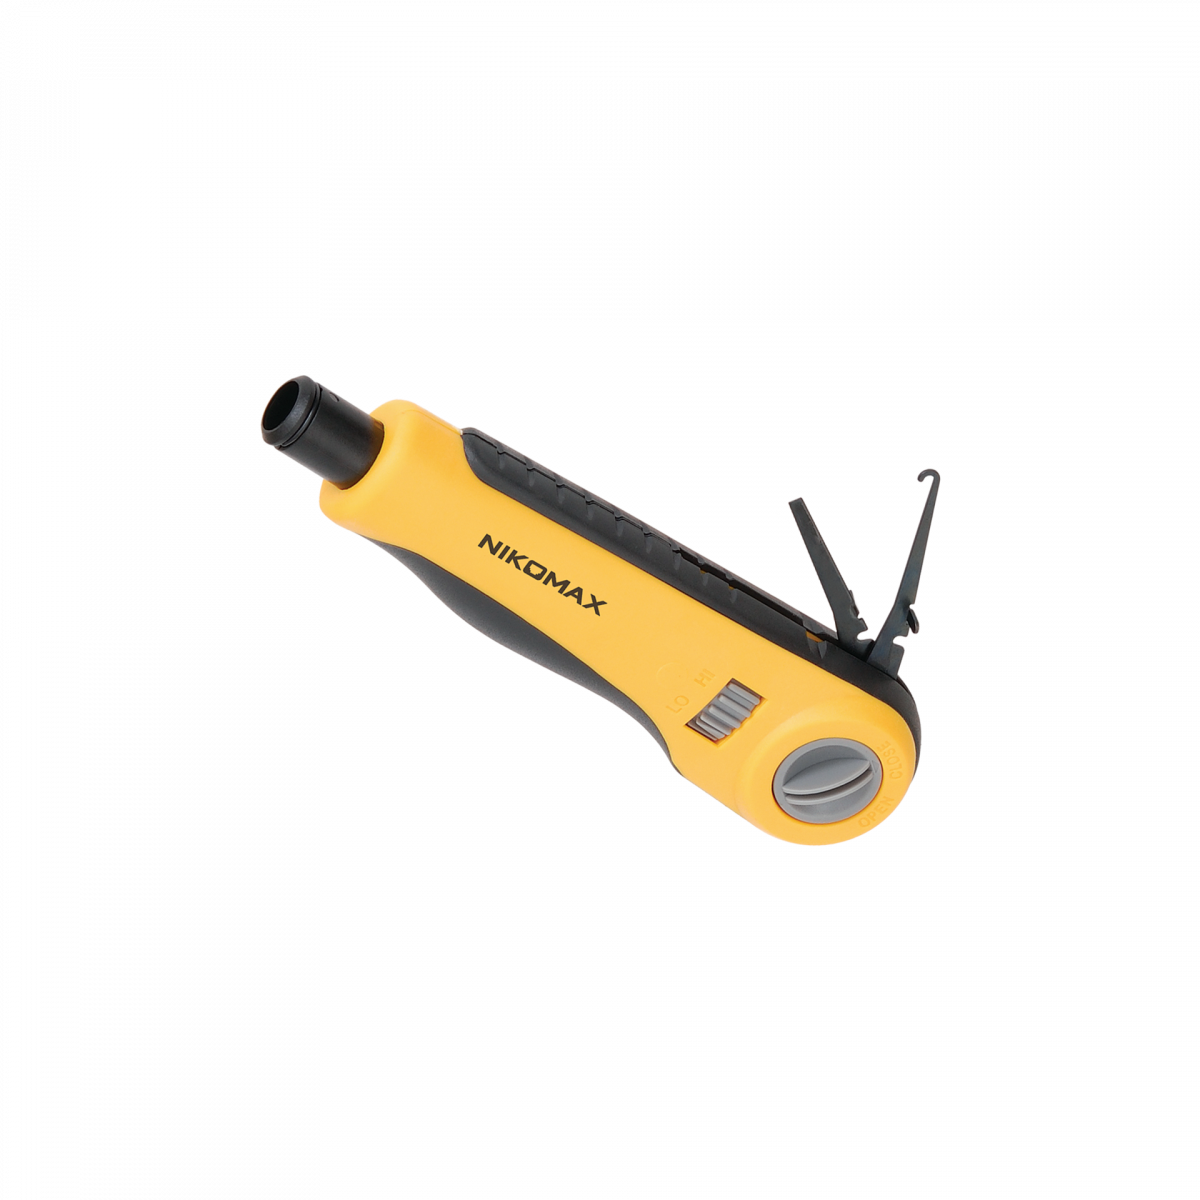 Инструмент NIKOMAX для заделки витой пары, ударного типа, 2 уровня регулировки силы удара, крепление Twist-Lock, нож для кроссов типа 110 в комплекте